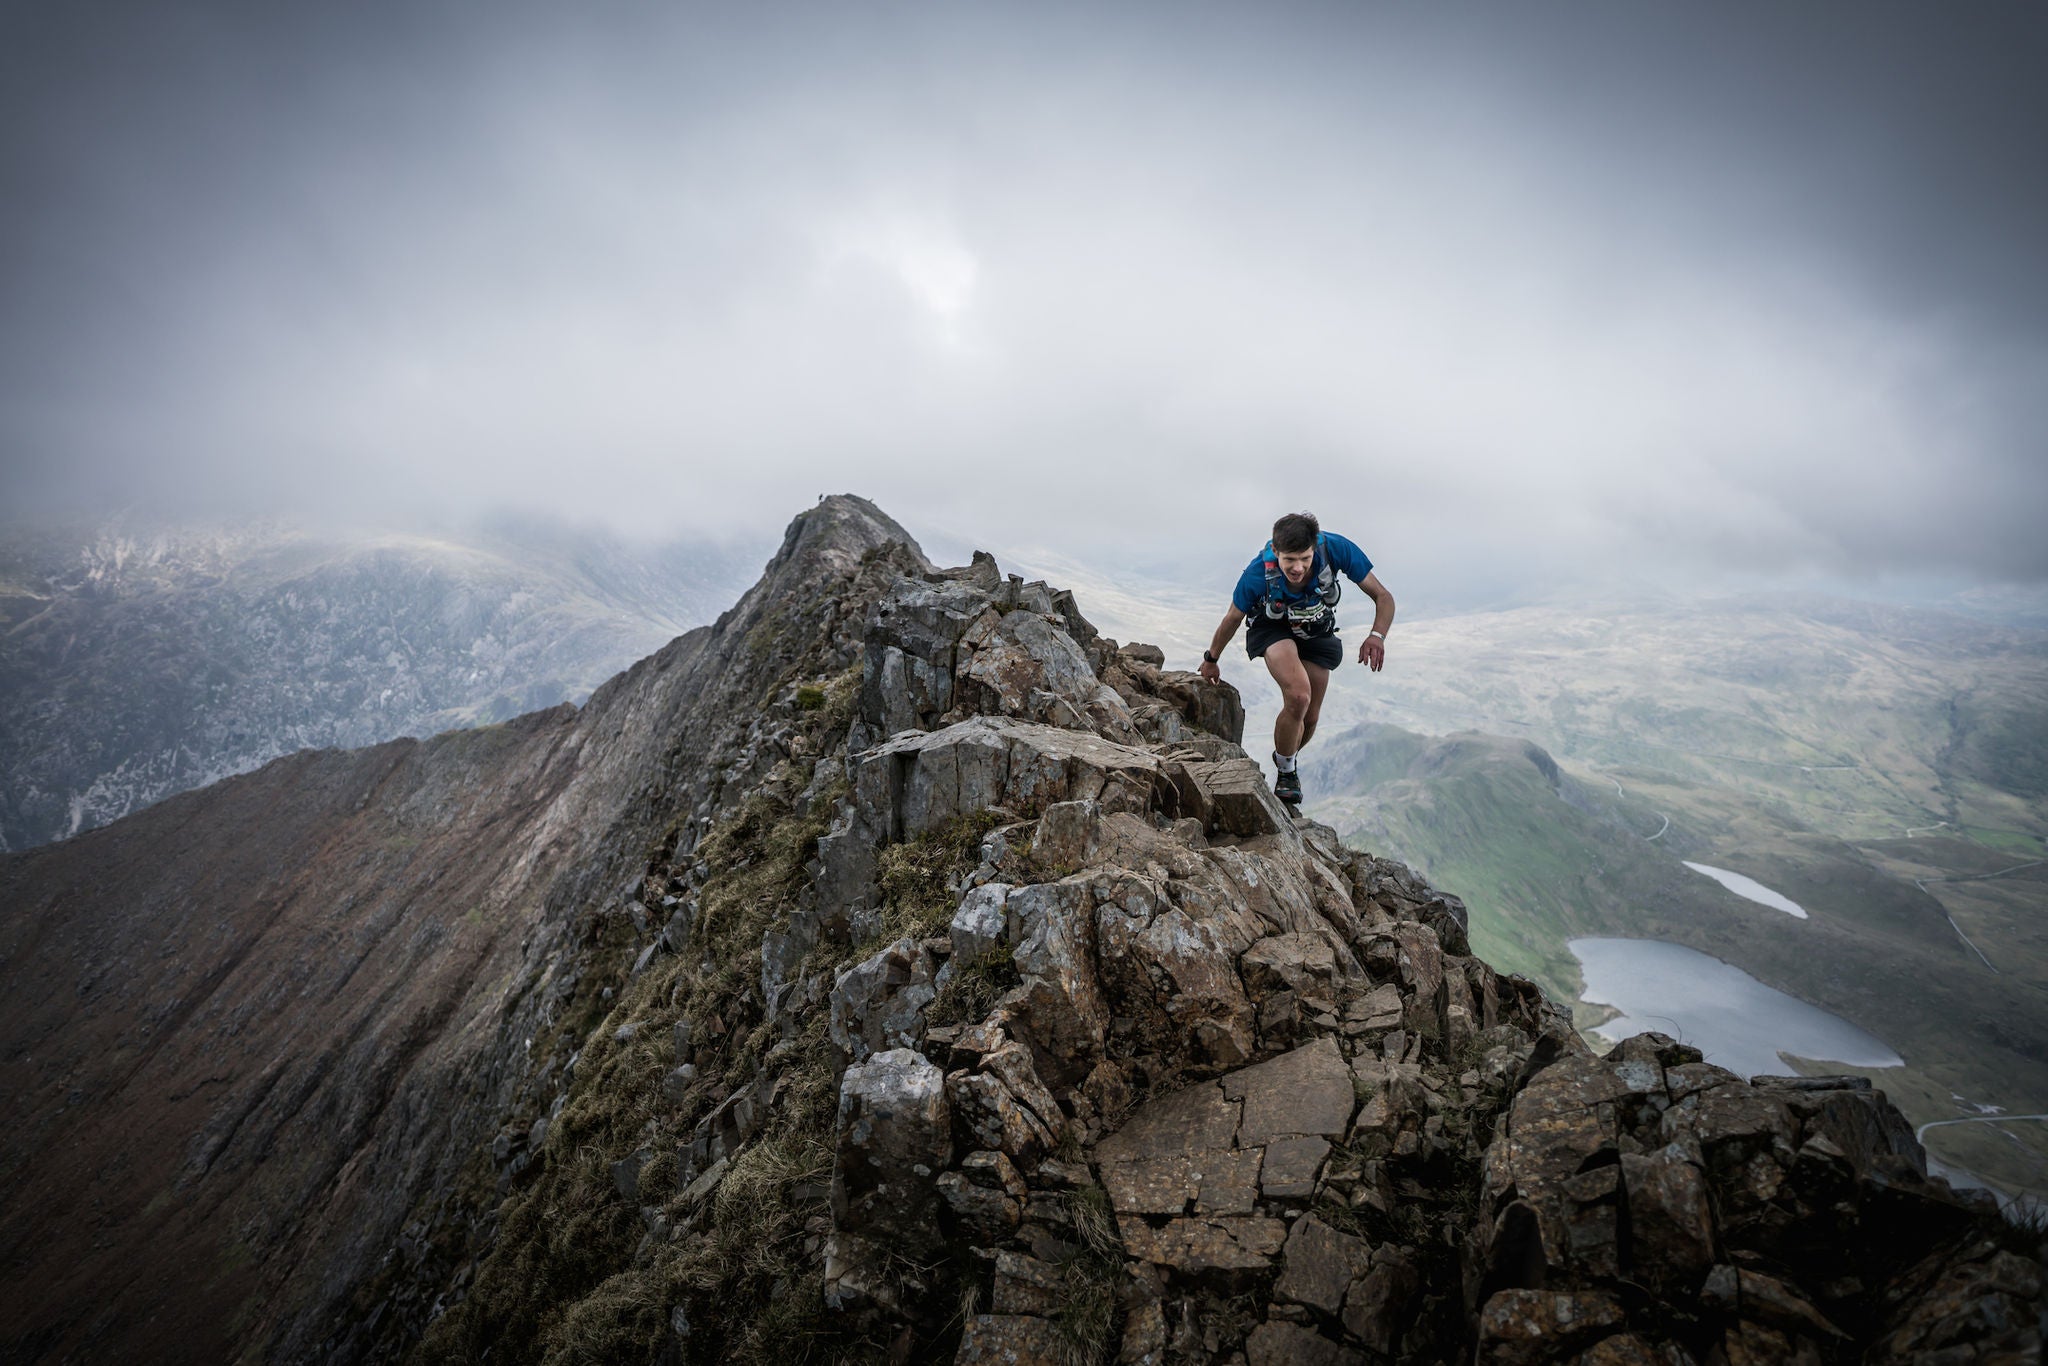 웨일스의 드래곤: 바위 산이 어렵다면 드래곤즈백 레이스에는 참가하지 않는 것이 좋습니다. 사진: 이언 콜레스(Ian Corless) / Berghaus Dragon’s Back Race